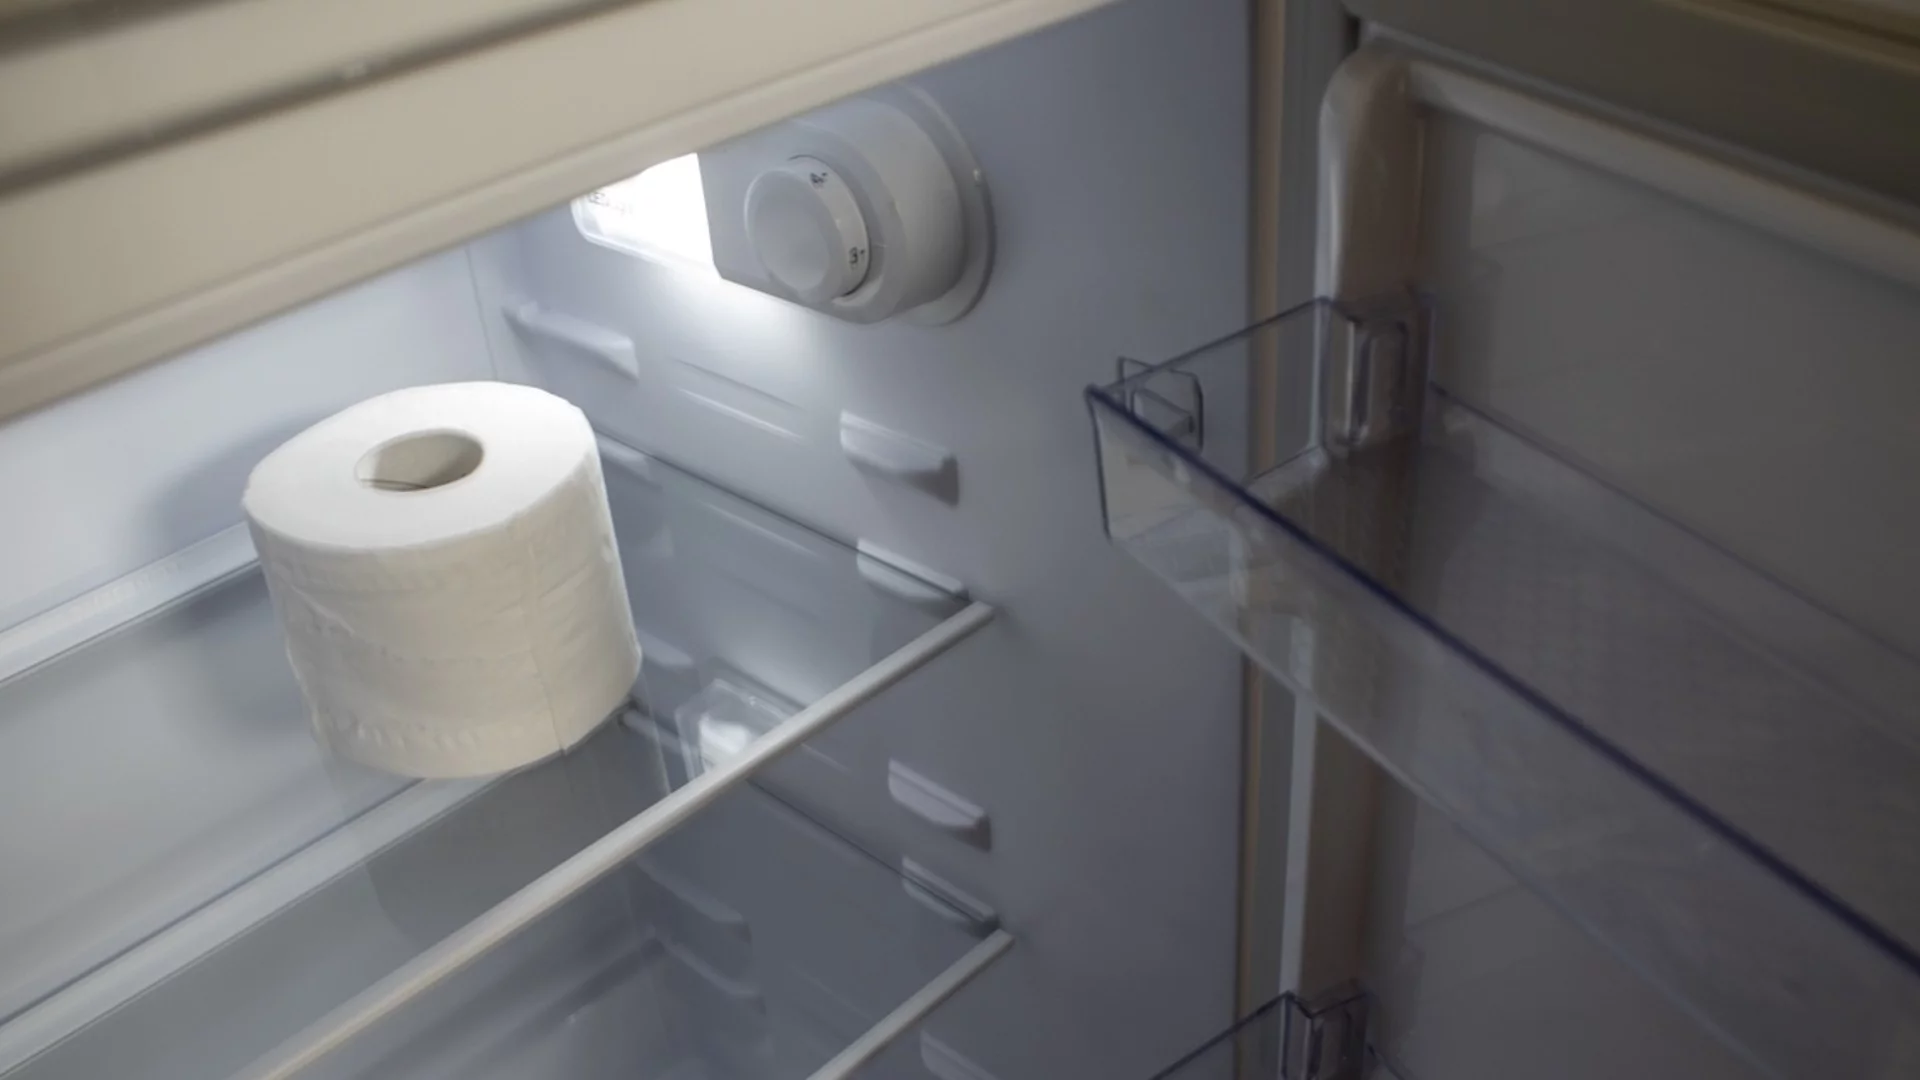 Защо всички започнаха да държат тоалетната си хартия в хладилника